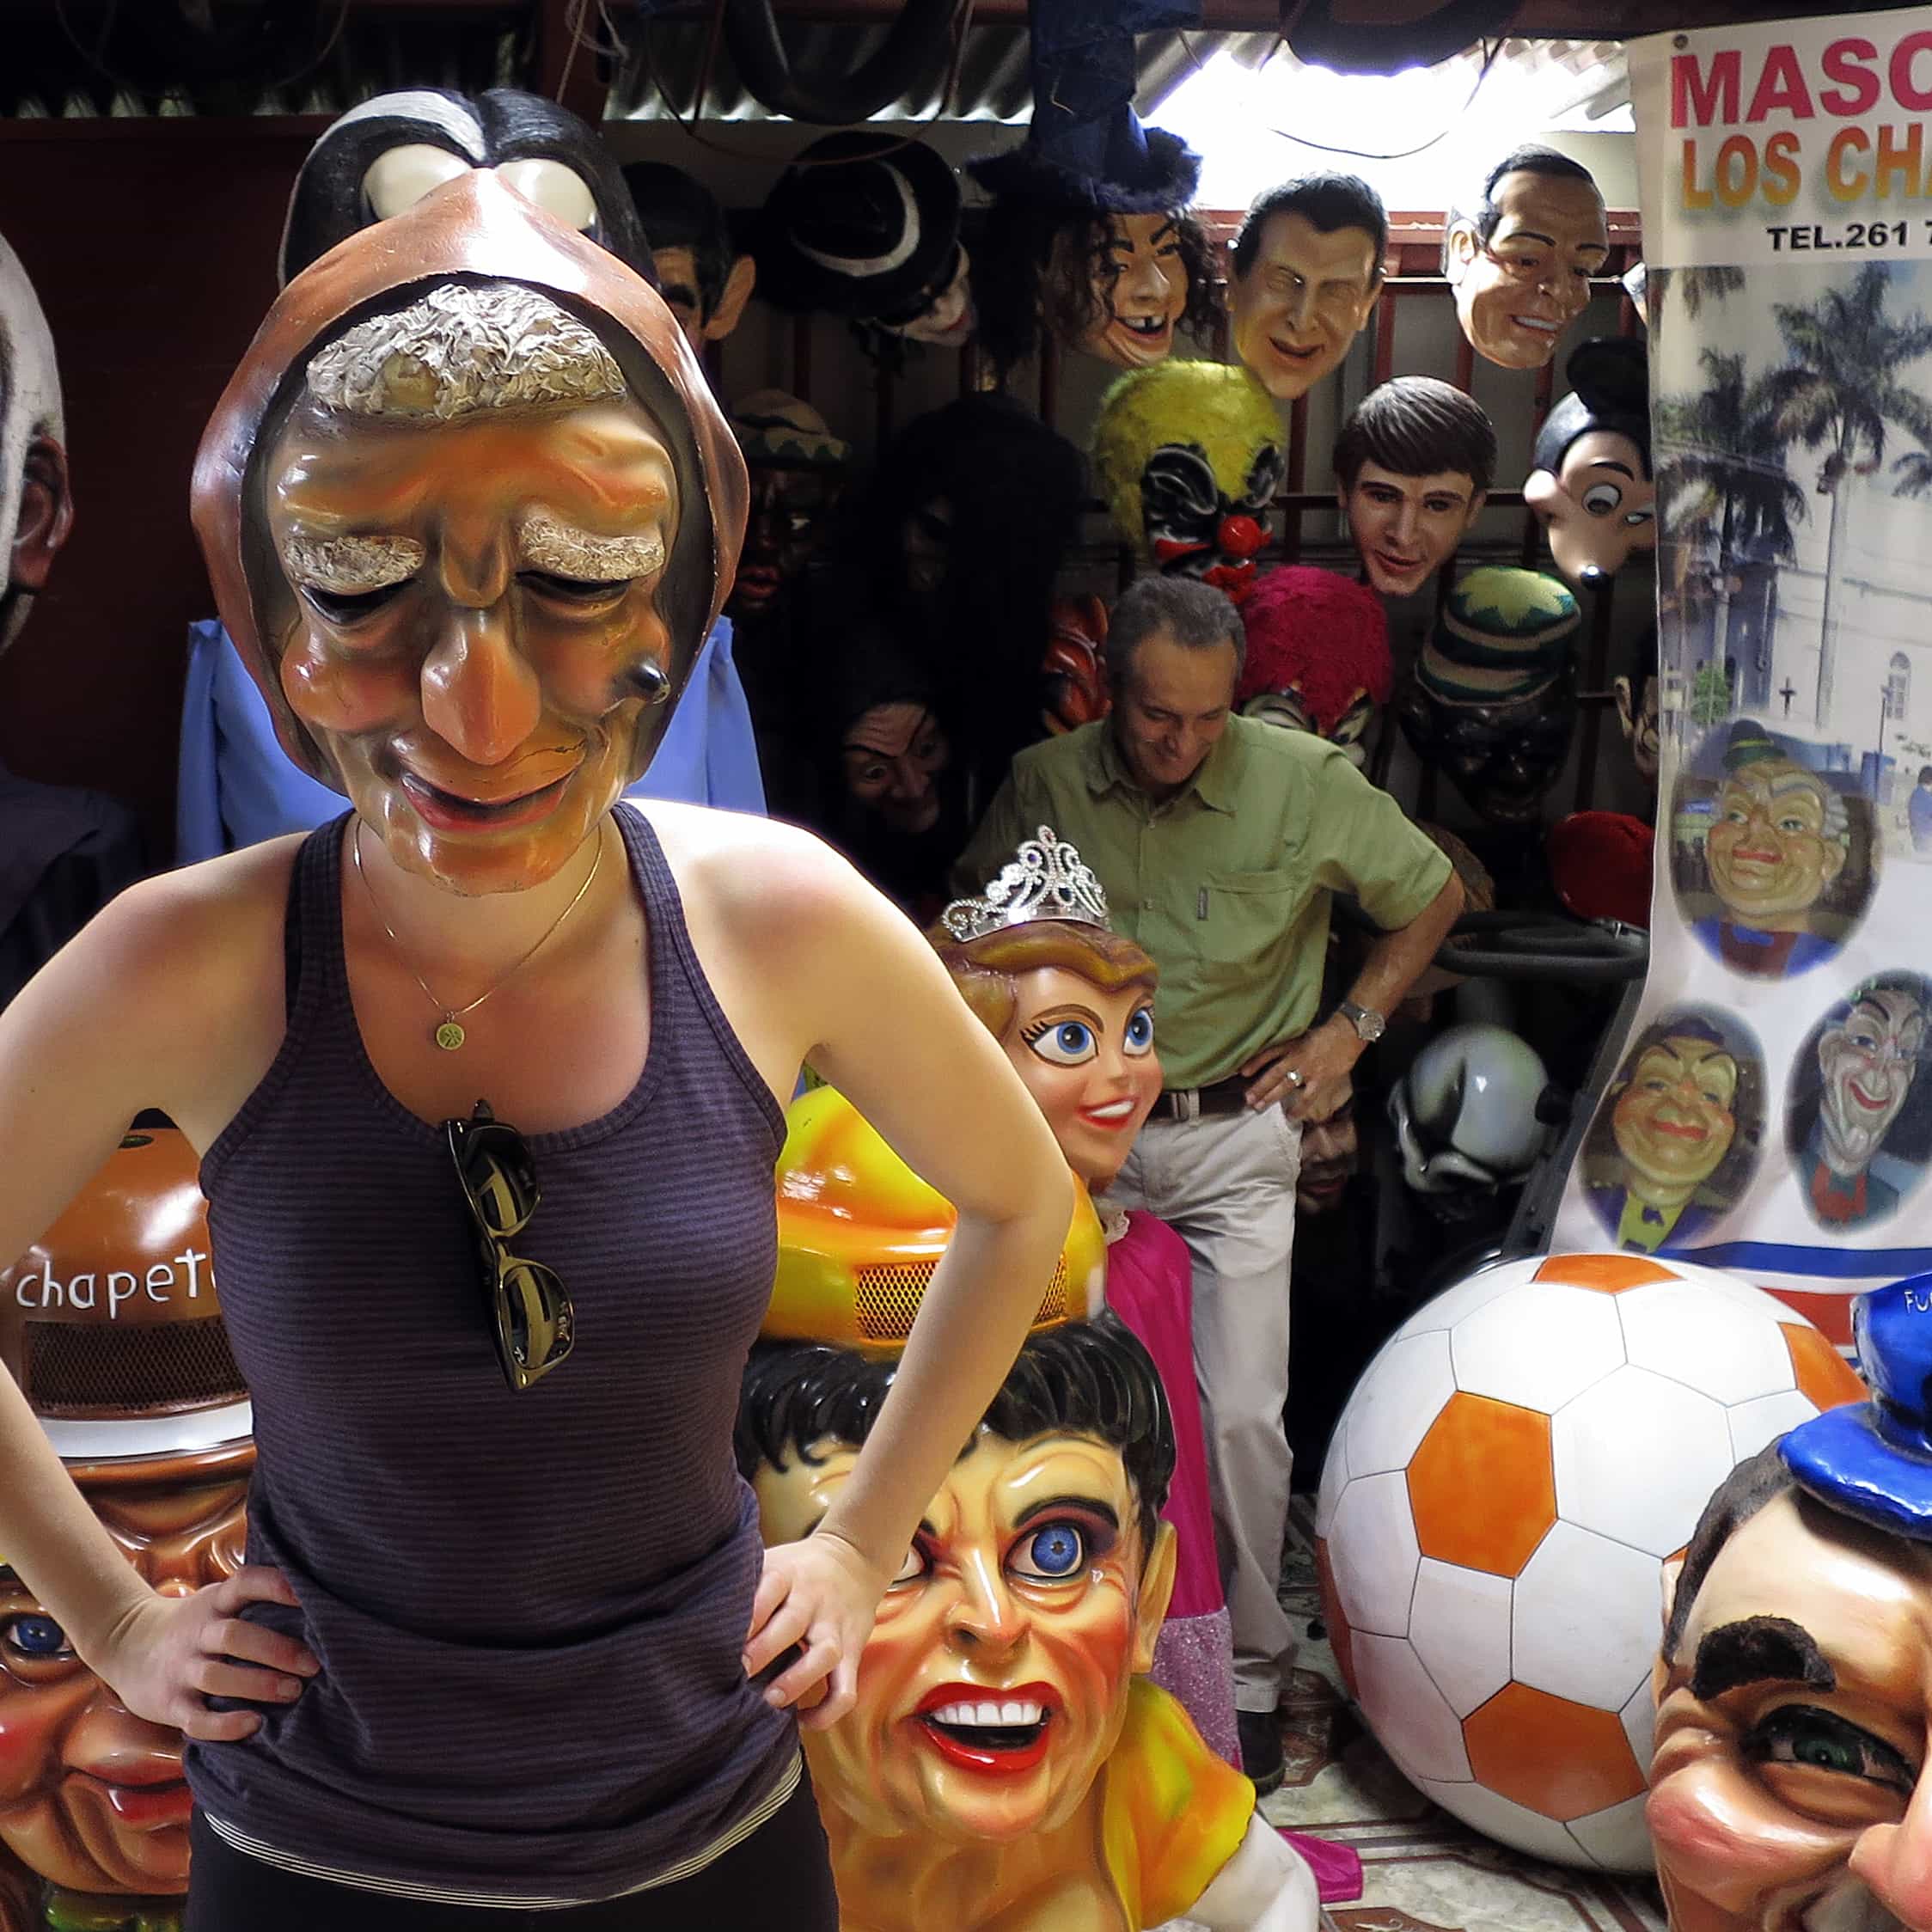 Woman wearing mascara mask